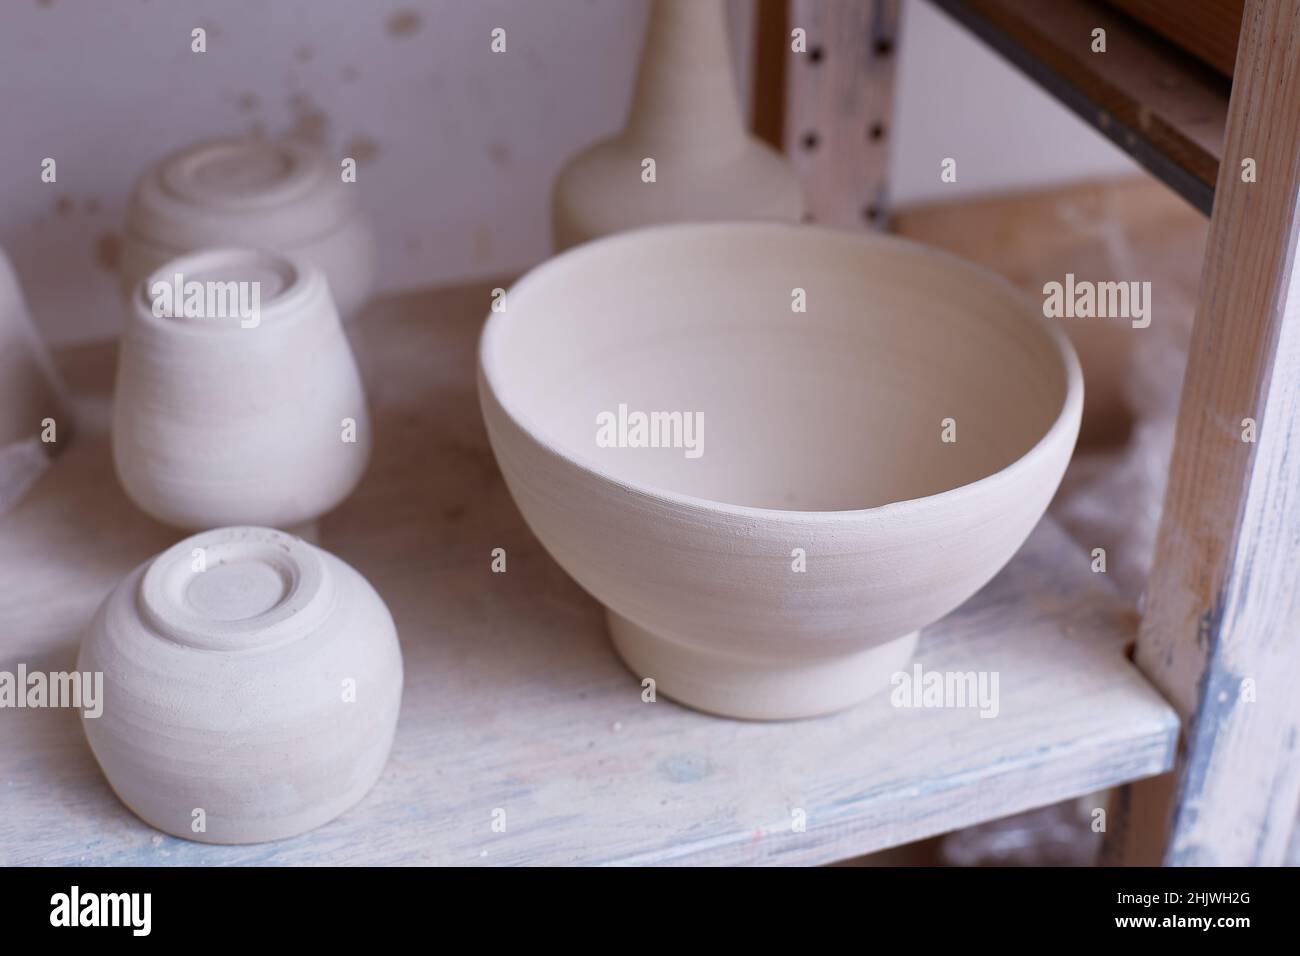 Piatti fatti a mano vuoti. Vaschette in ceramica sul ripiano. Lavoro fatto a mano. Le piastre sono fatte di creta. Foto Stock